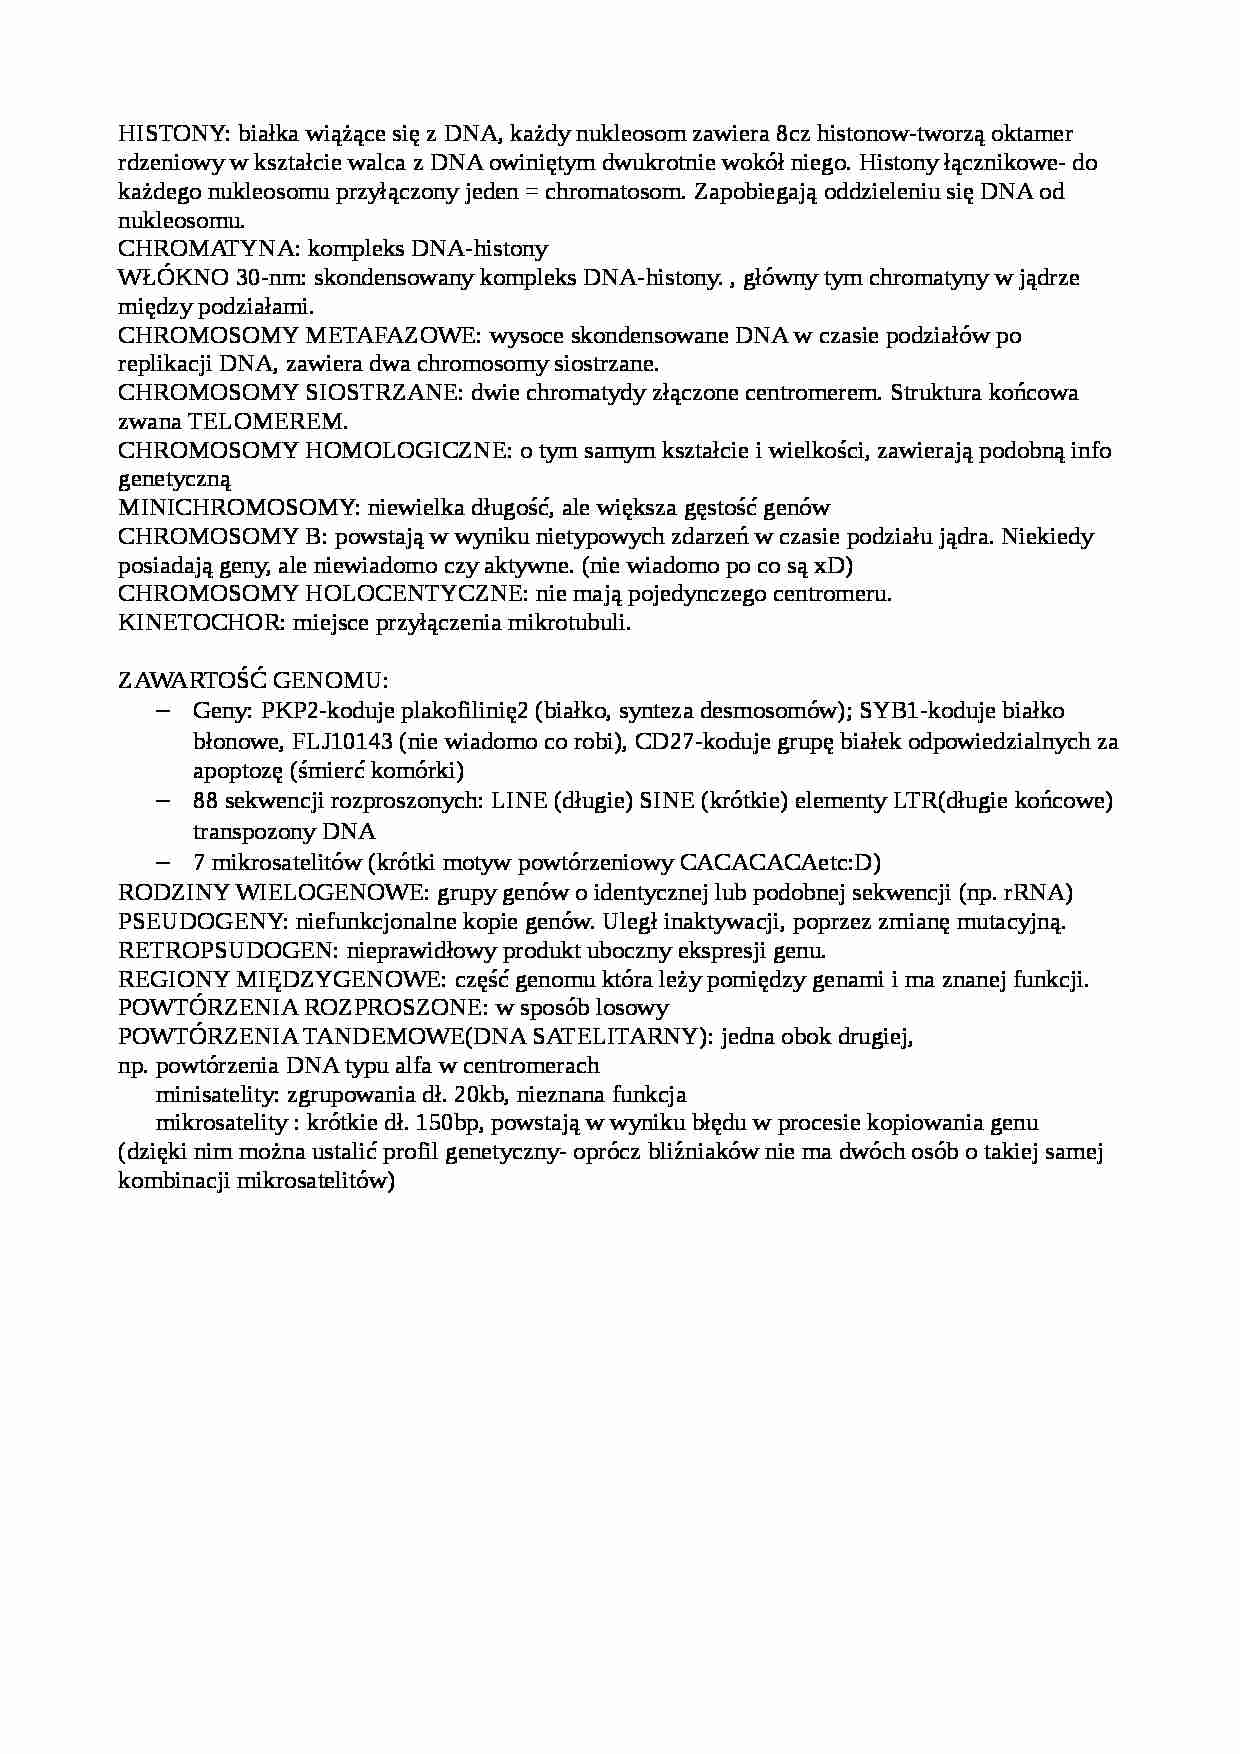 Eukariotyczne gonomy jądrowe- opracowanie - strona 1